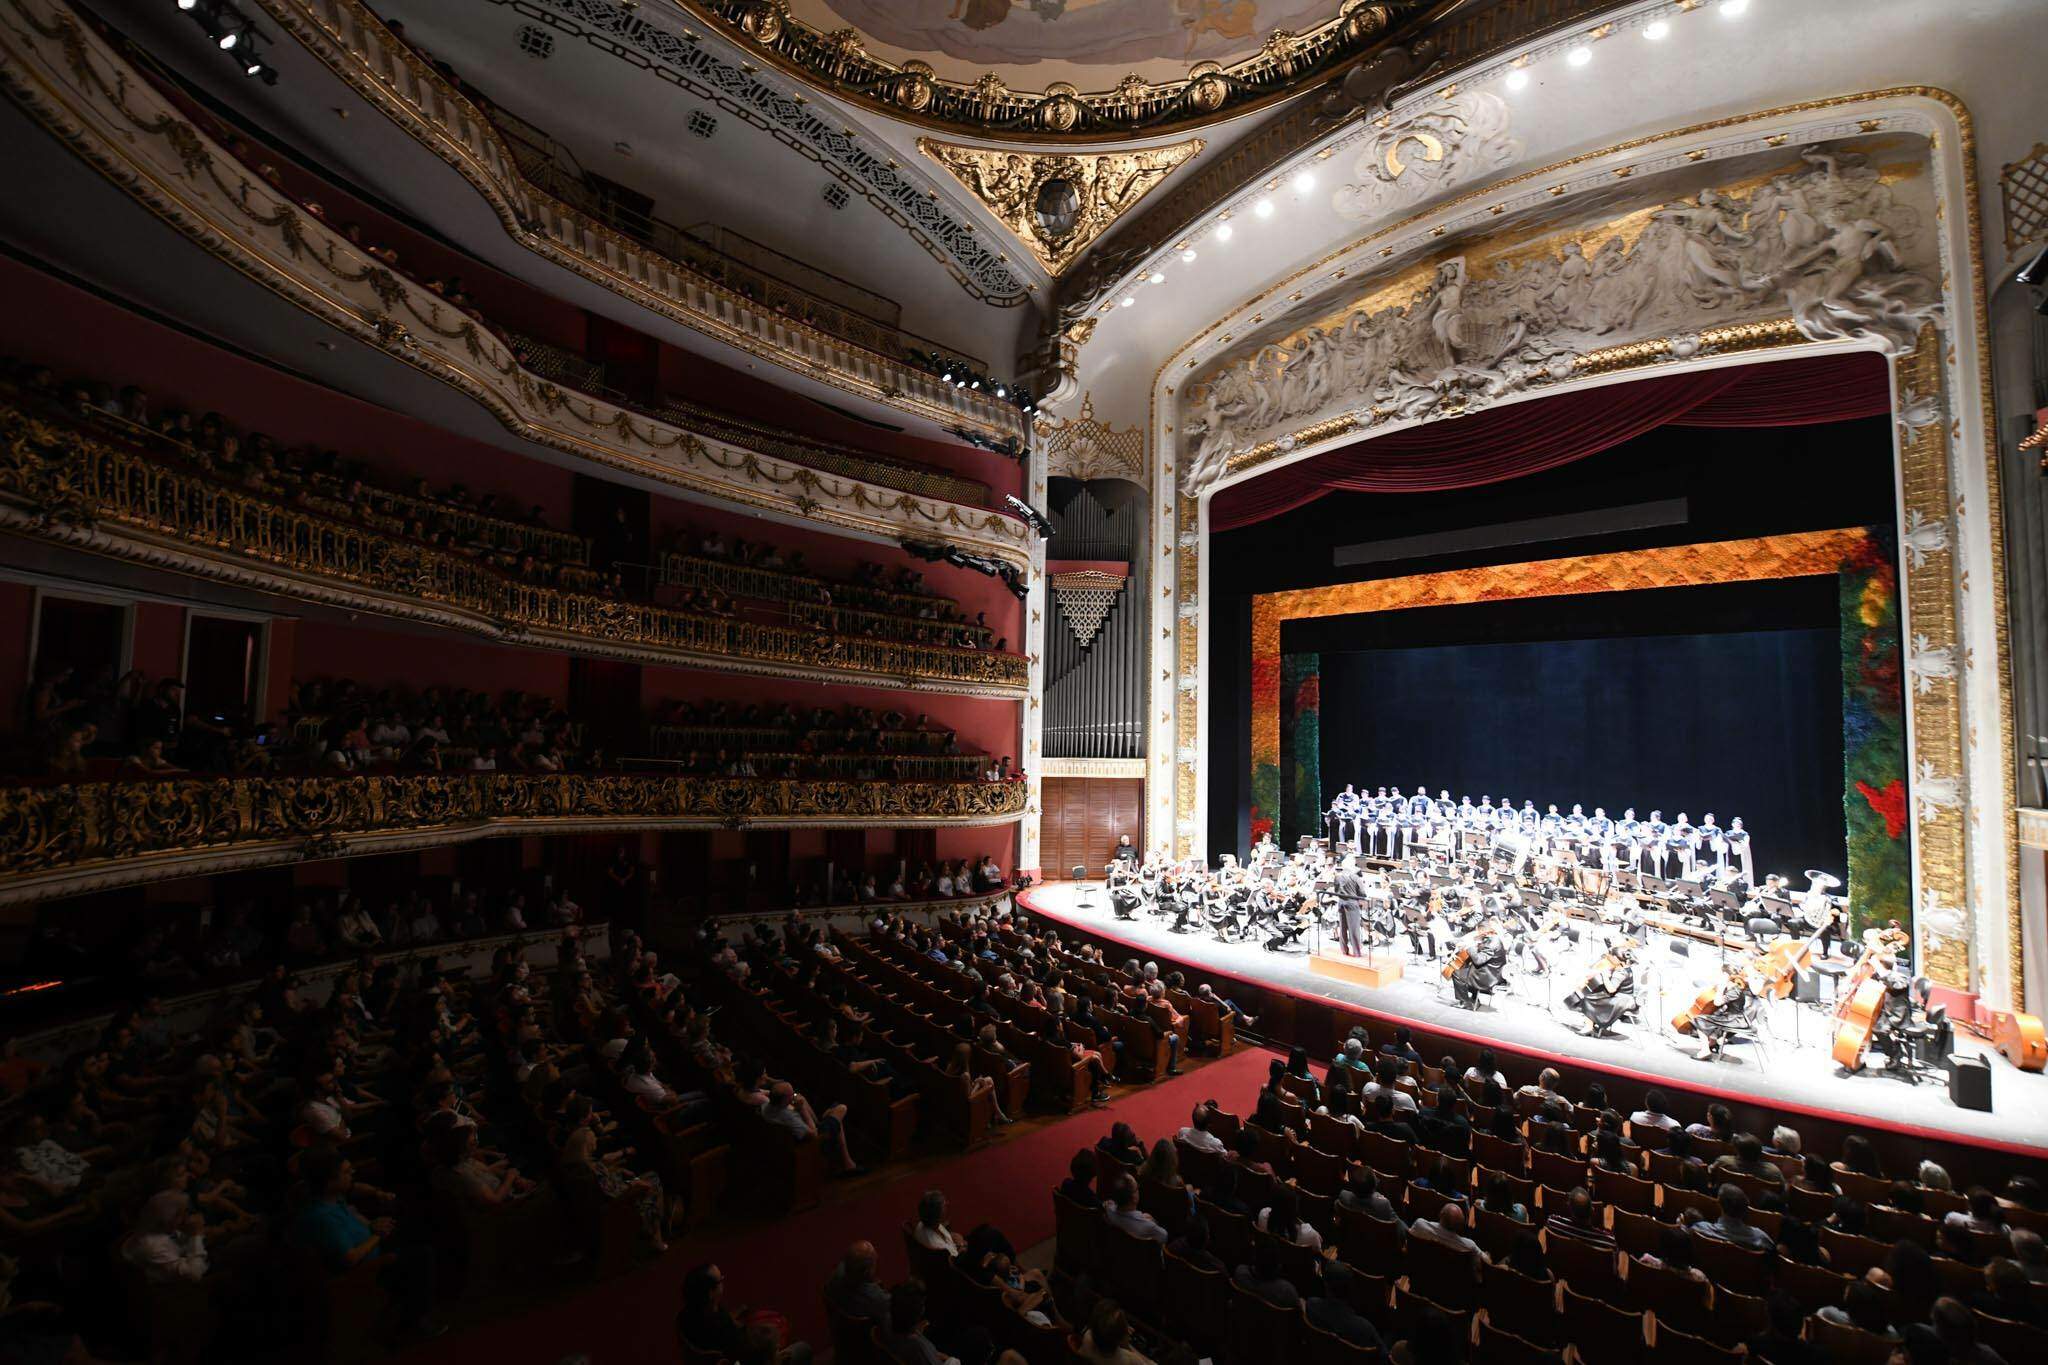 Em 2019, o PEMSA se apresentou no Teatro Municipal de São Paulo, abrindo o concerto da Bachiana Filarmônica SESI-SP